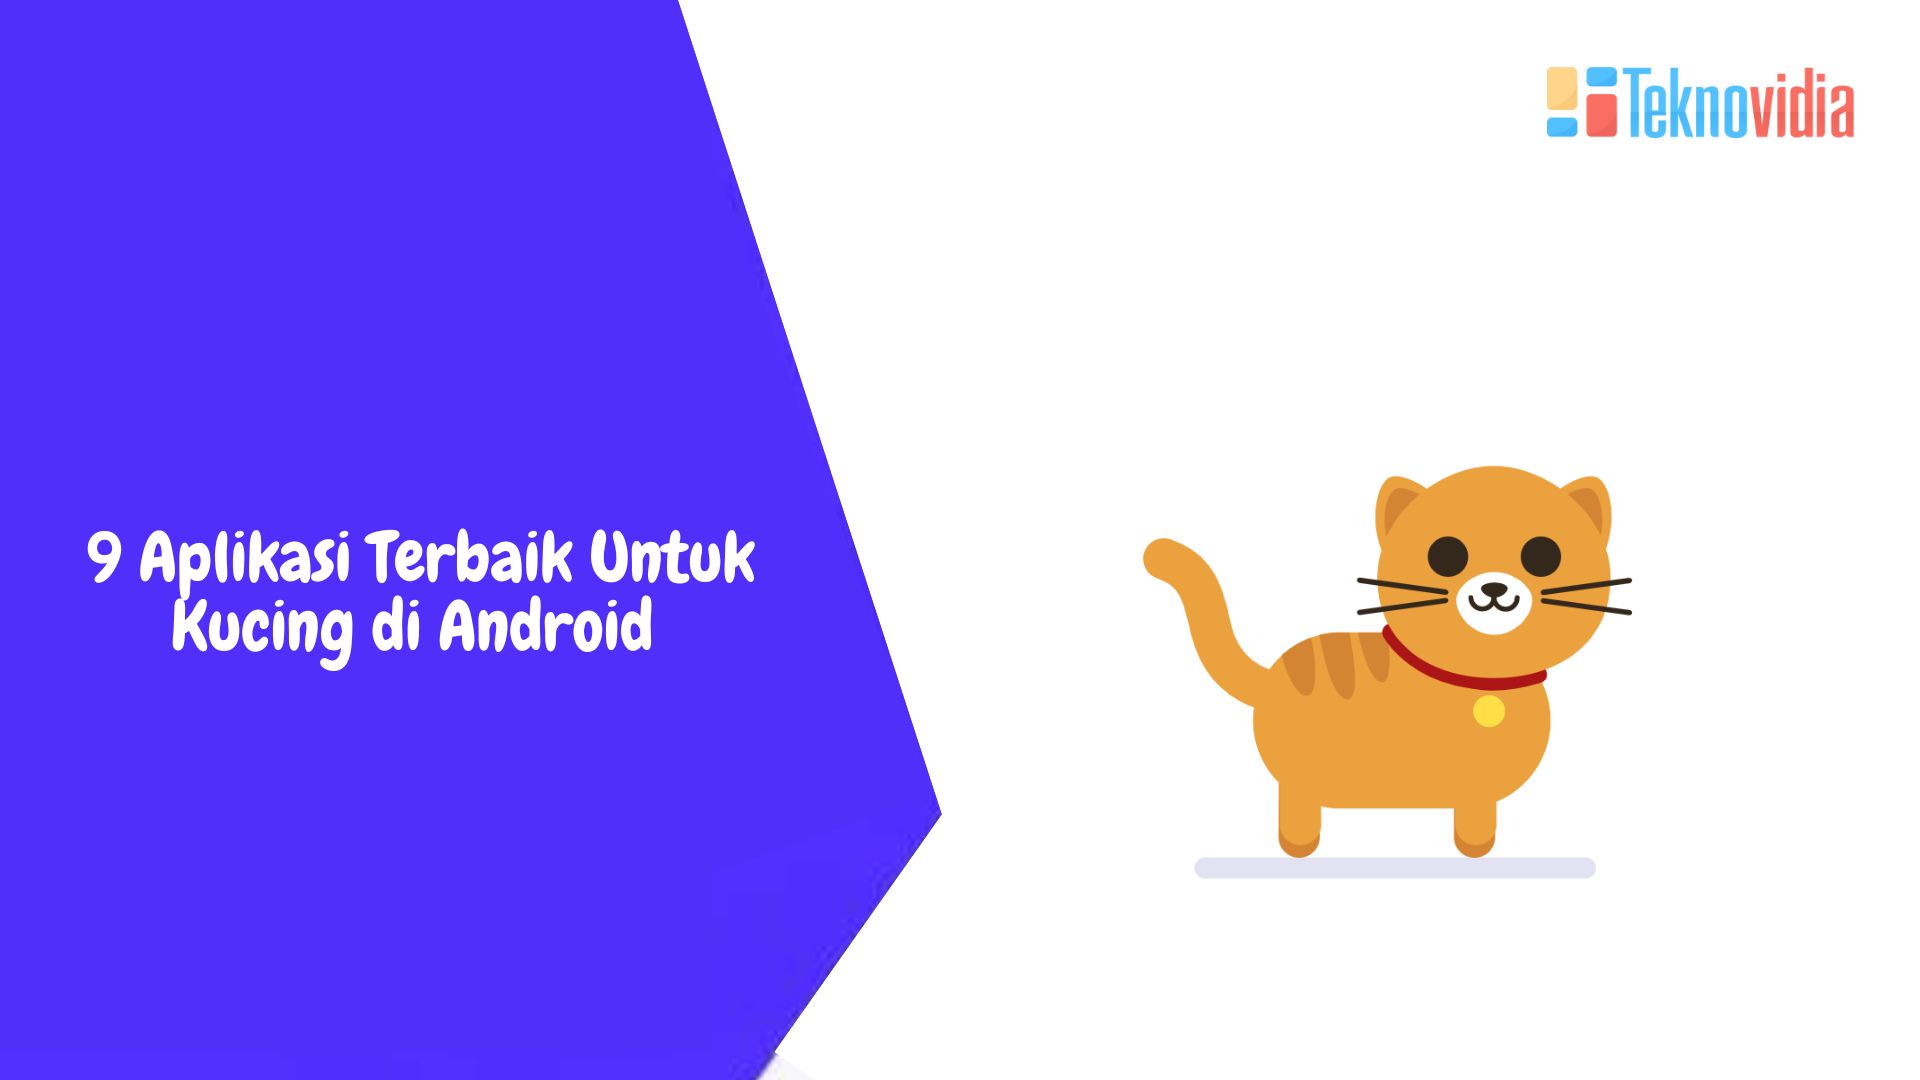 9 Aplikasi Terbaik Untuk Kucing di Android